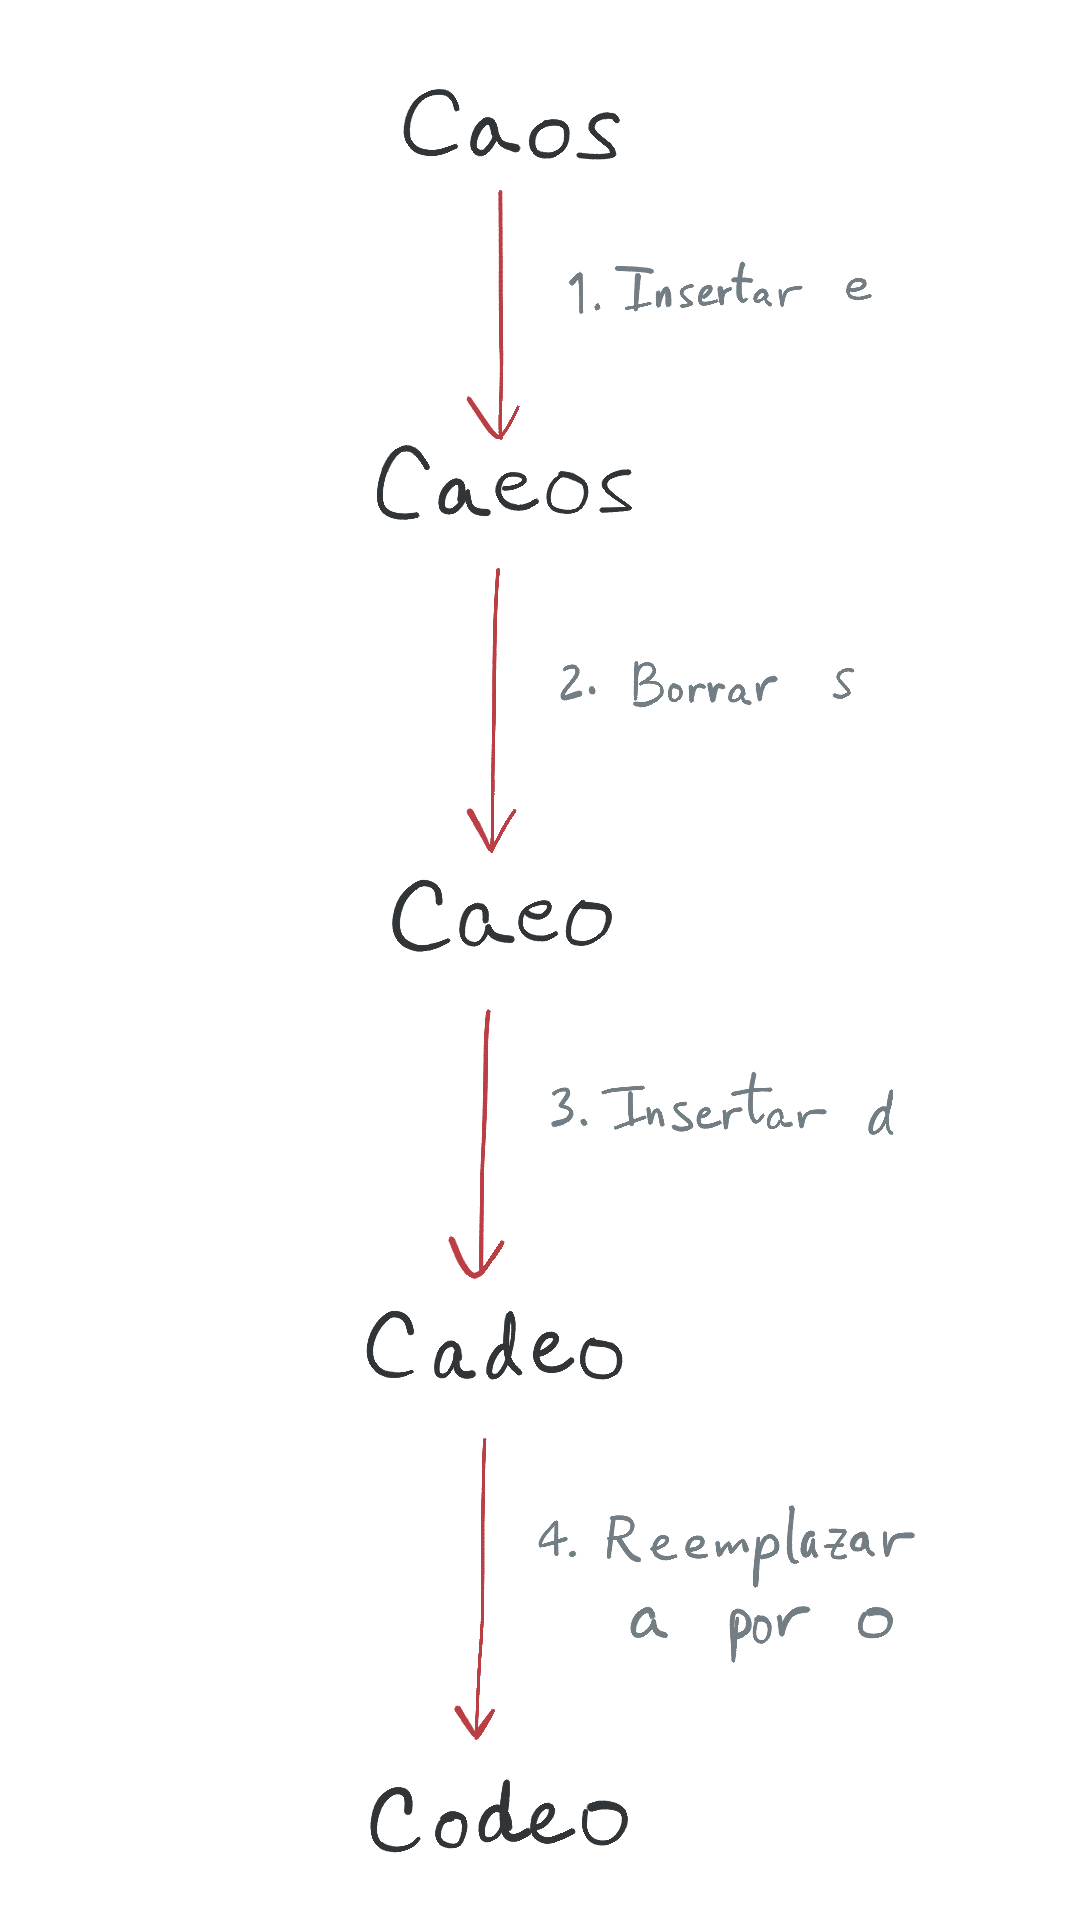 Convertir caos en Codeo usando 4 operaciones: caos -> caeos -> caeo -> cadeo -> codeo